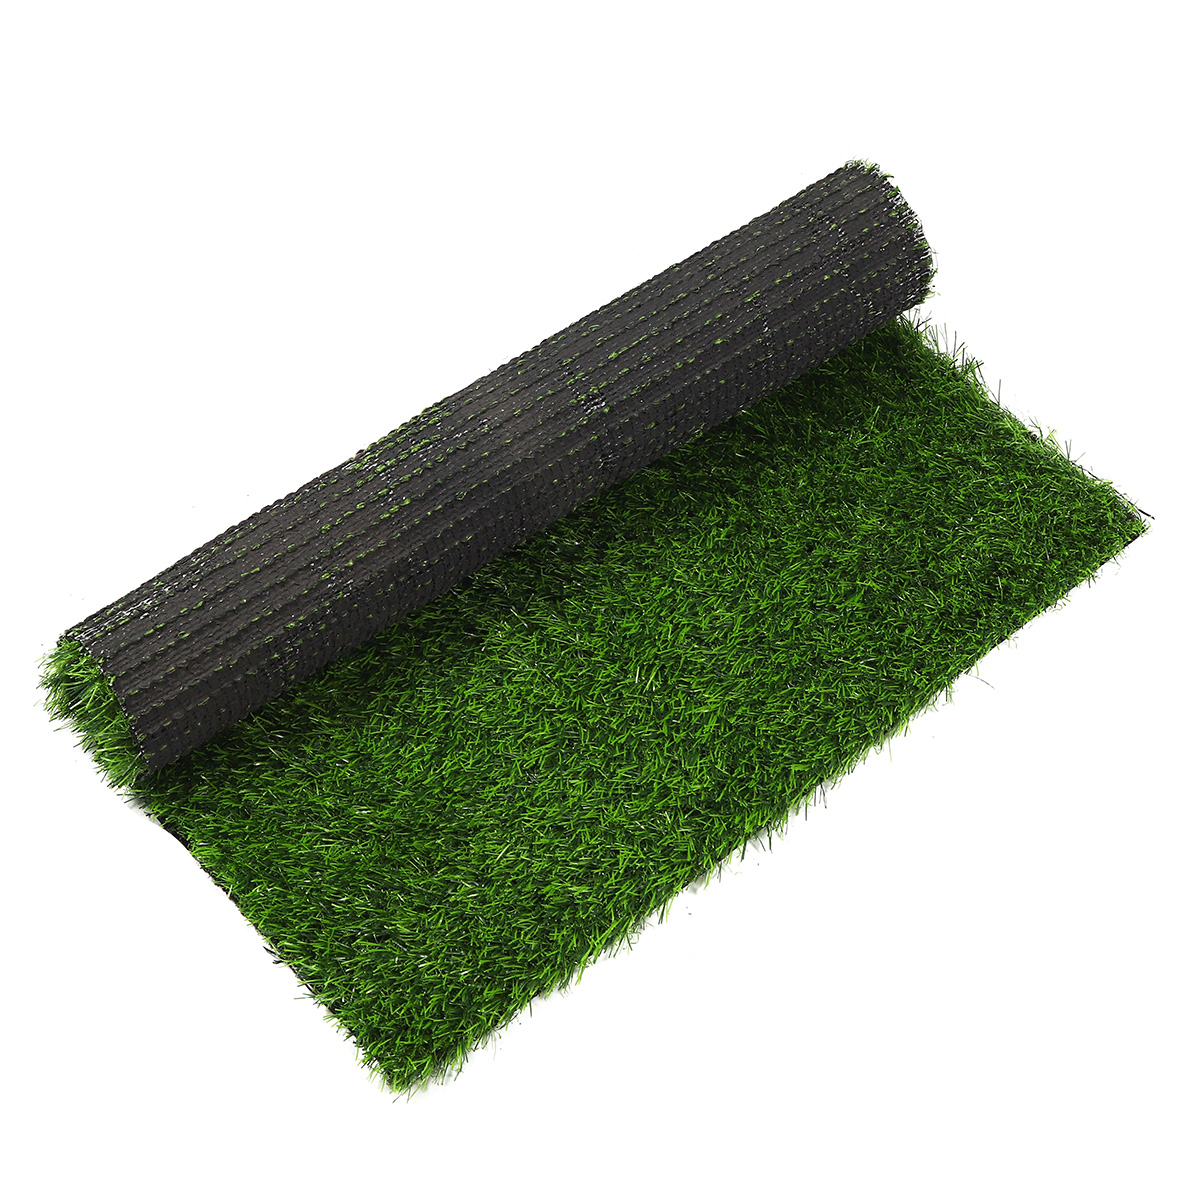 Artificial-Green-Grass-Carpet-Mat-Artificial-Lawns-Turf-Carpets-For-Home-Garden-Micro-Landscape-1726933-3